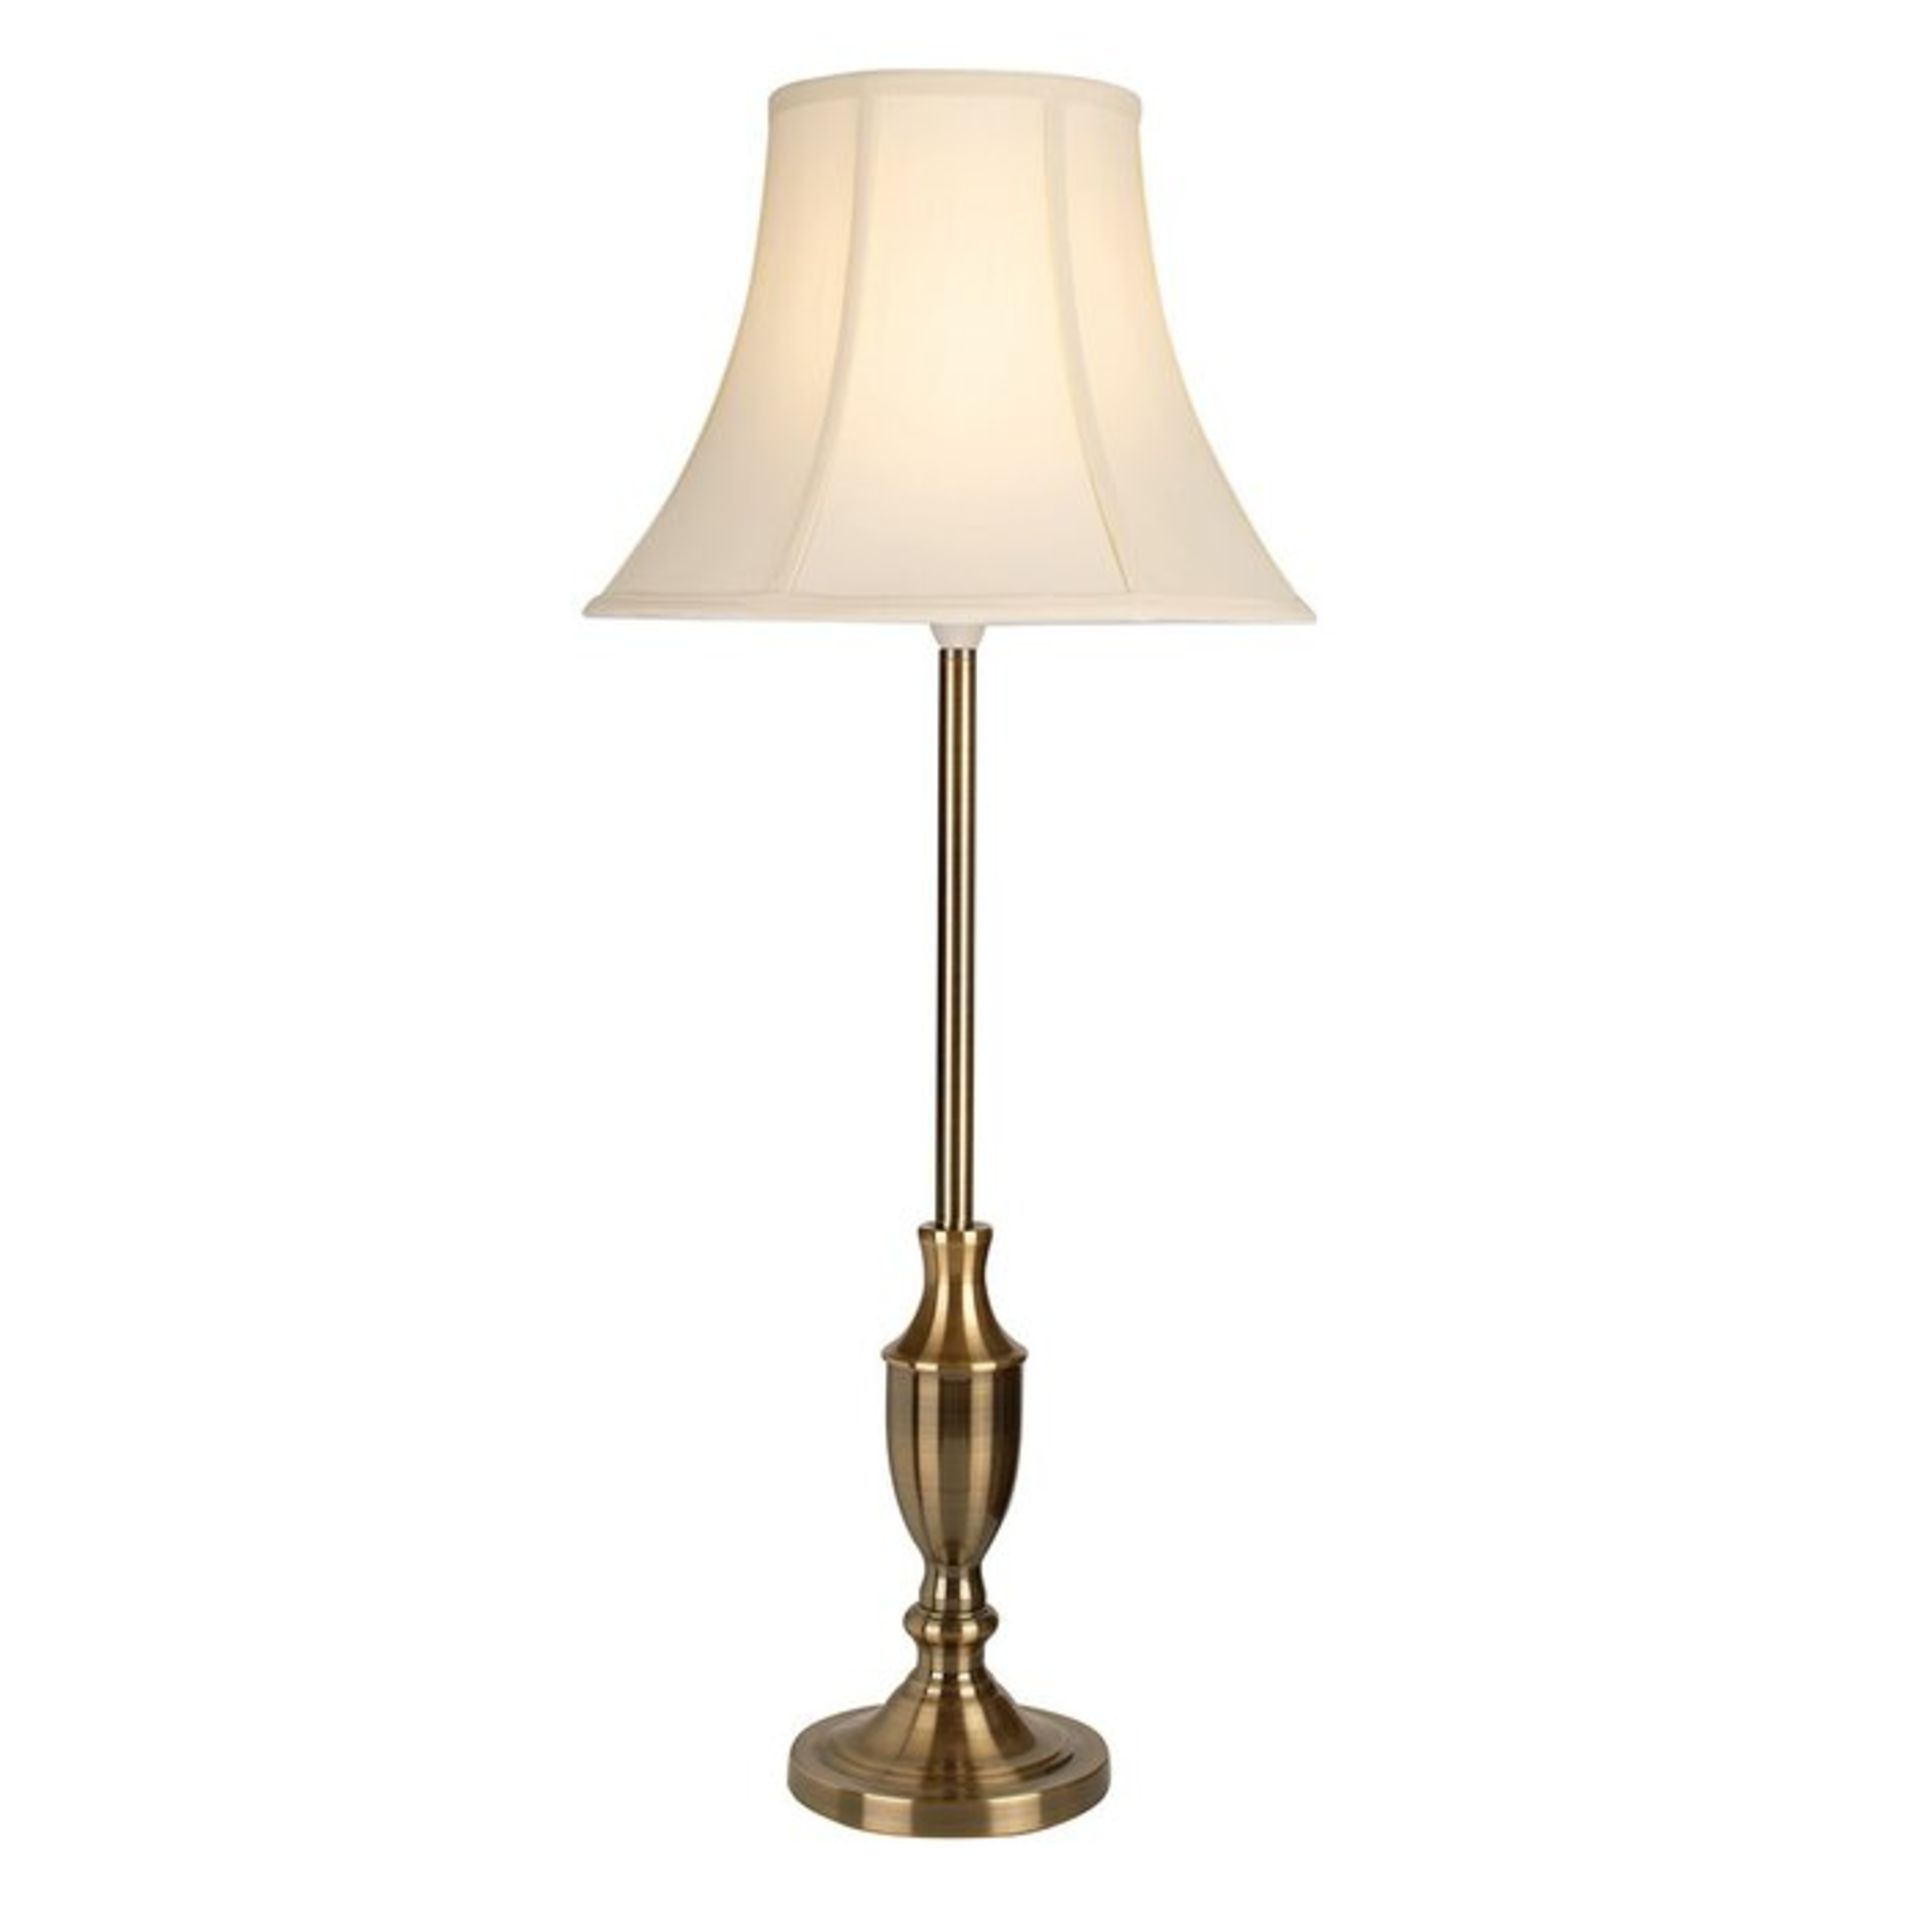 Waterloo 84cm Table Lamp - RRP £76.99